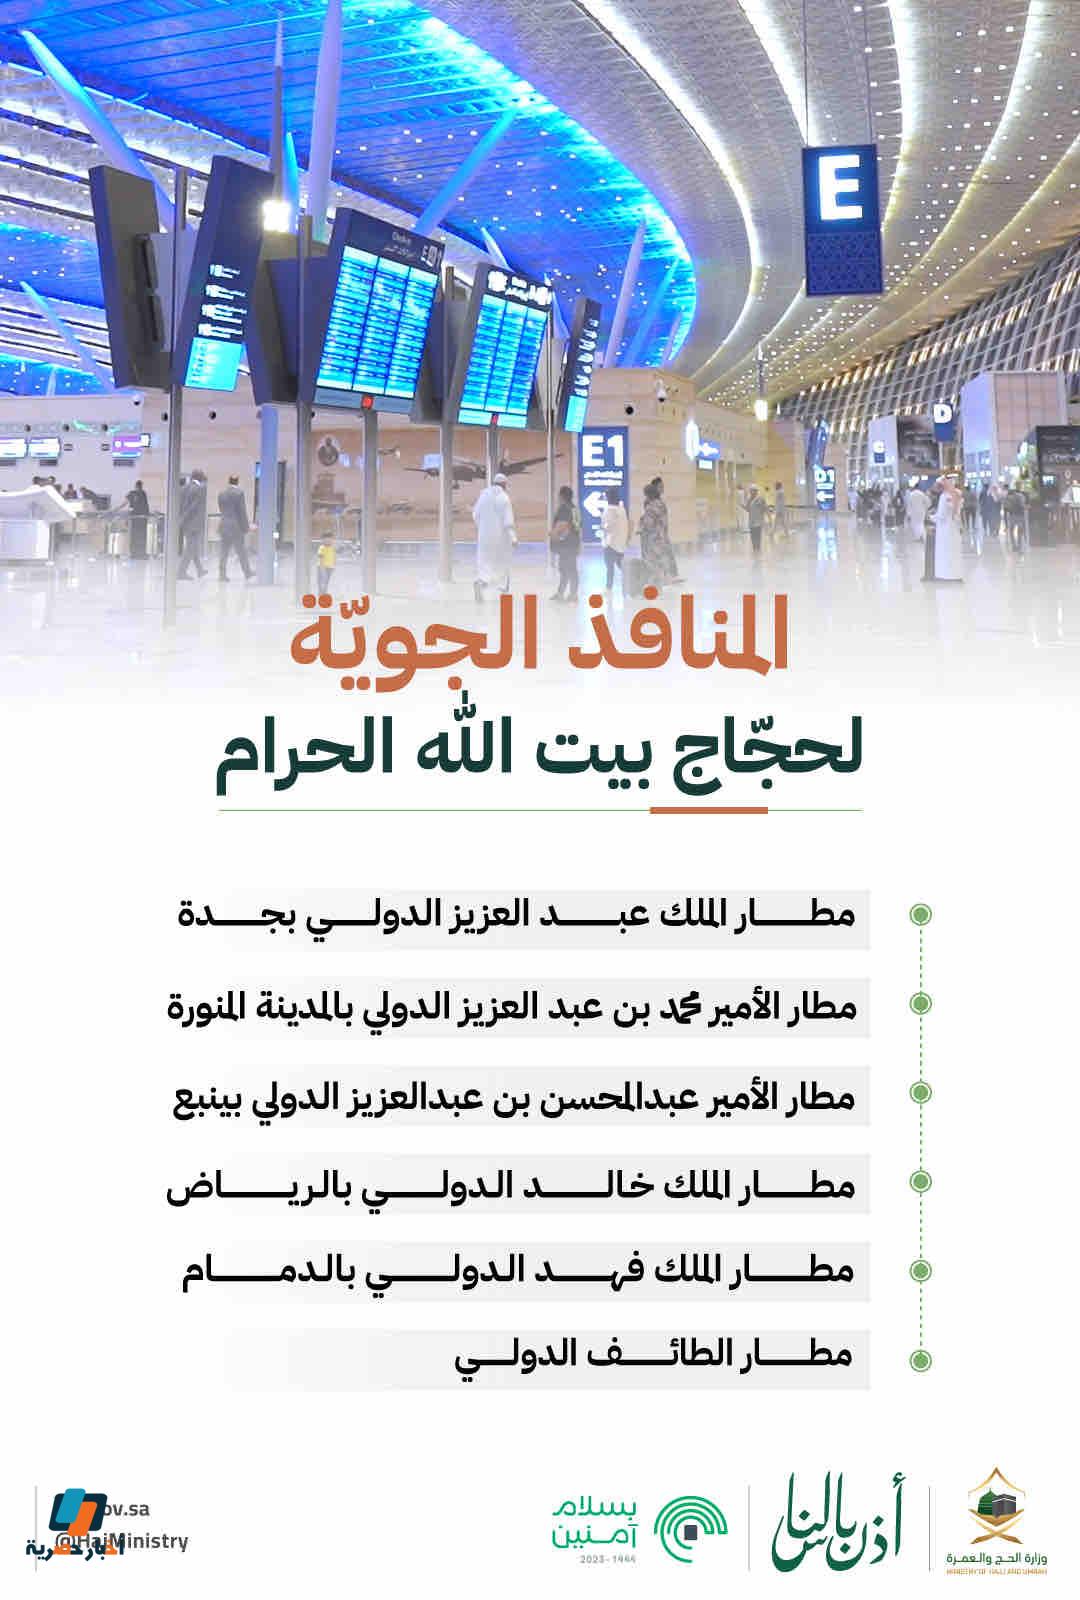 المطارات الجوية لحجاج بيت الله الحرام وحالات تعبئة الإقرار الجمركي لخدمة ضيوف الرحمن